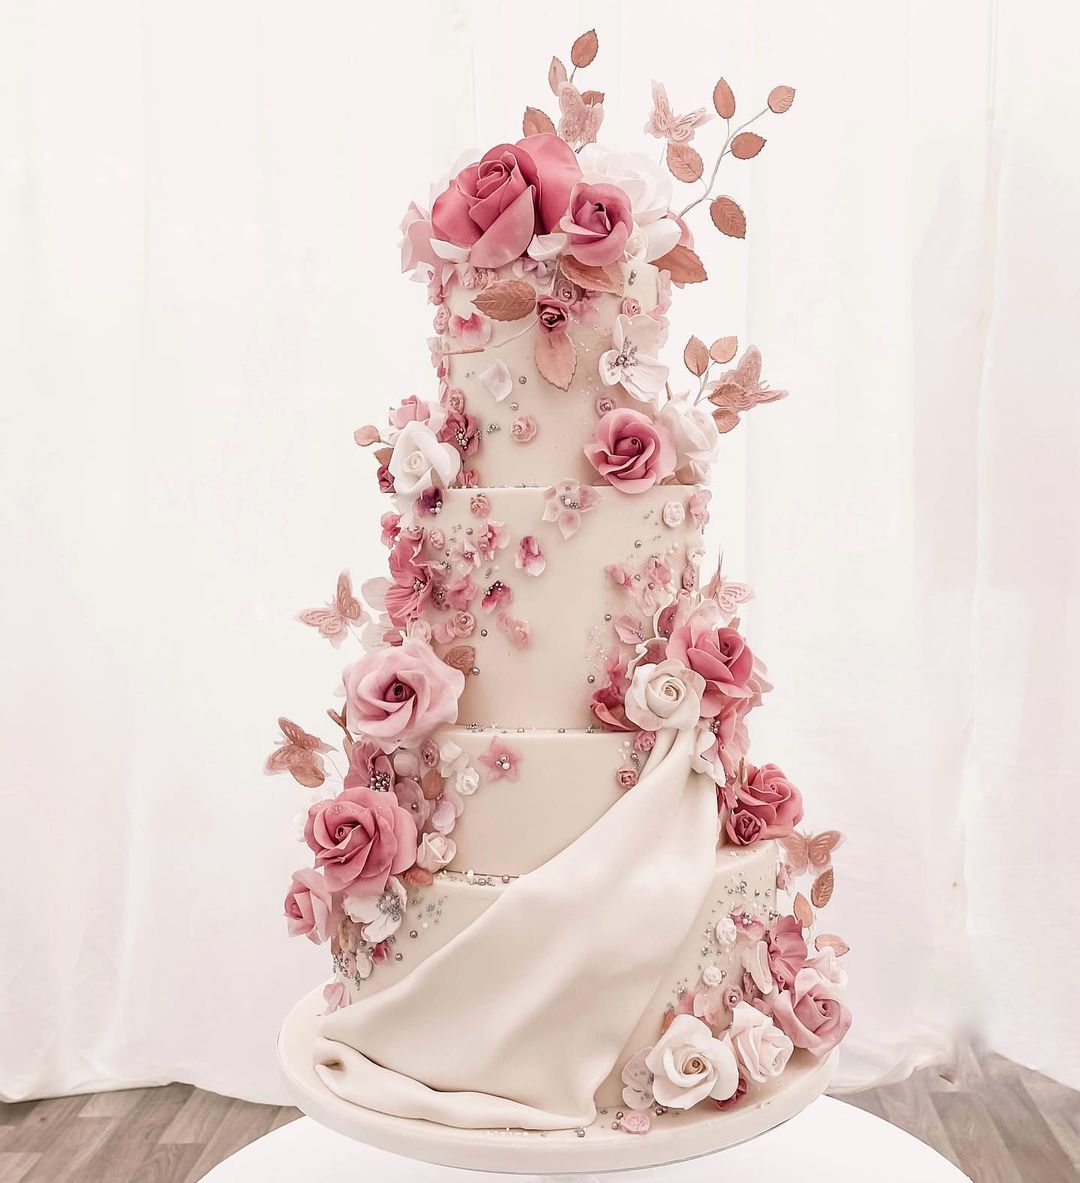 4 tier romantic wedding cake with pink sugar flowers via theprettycakecompany